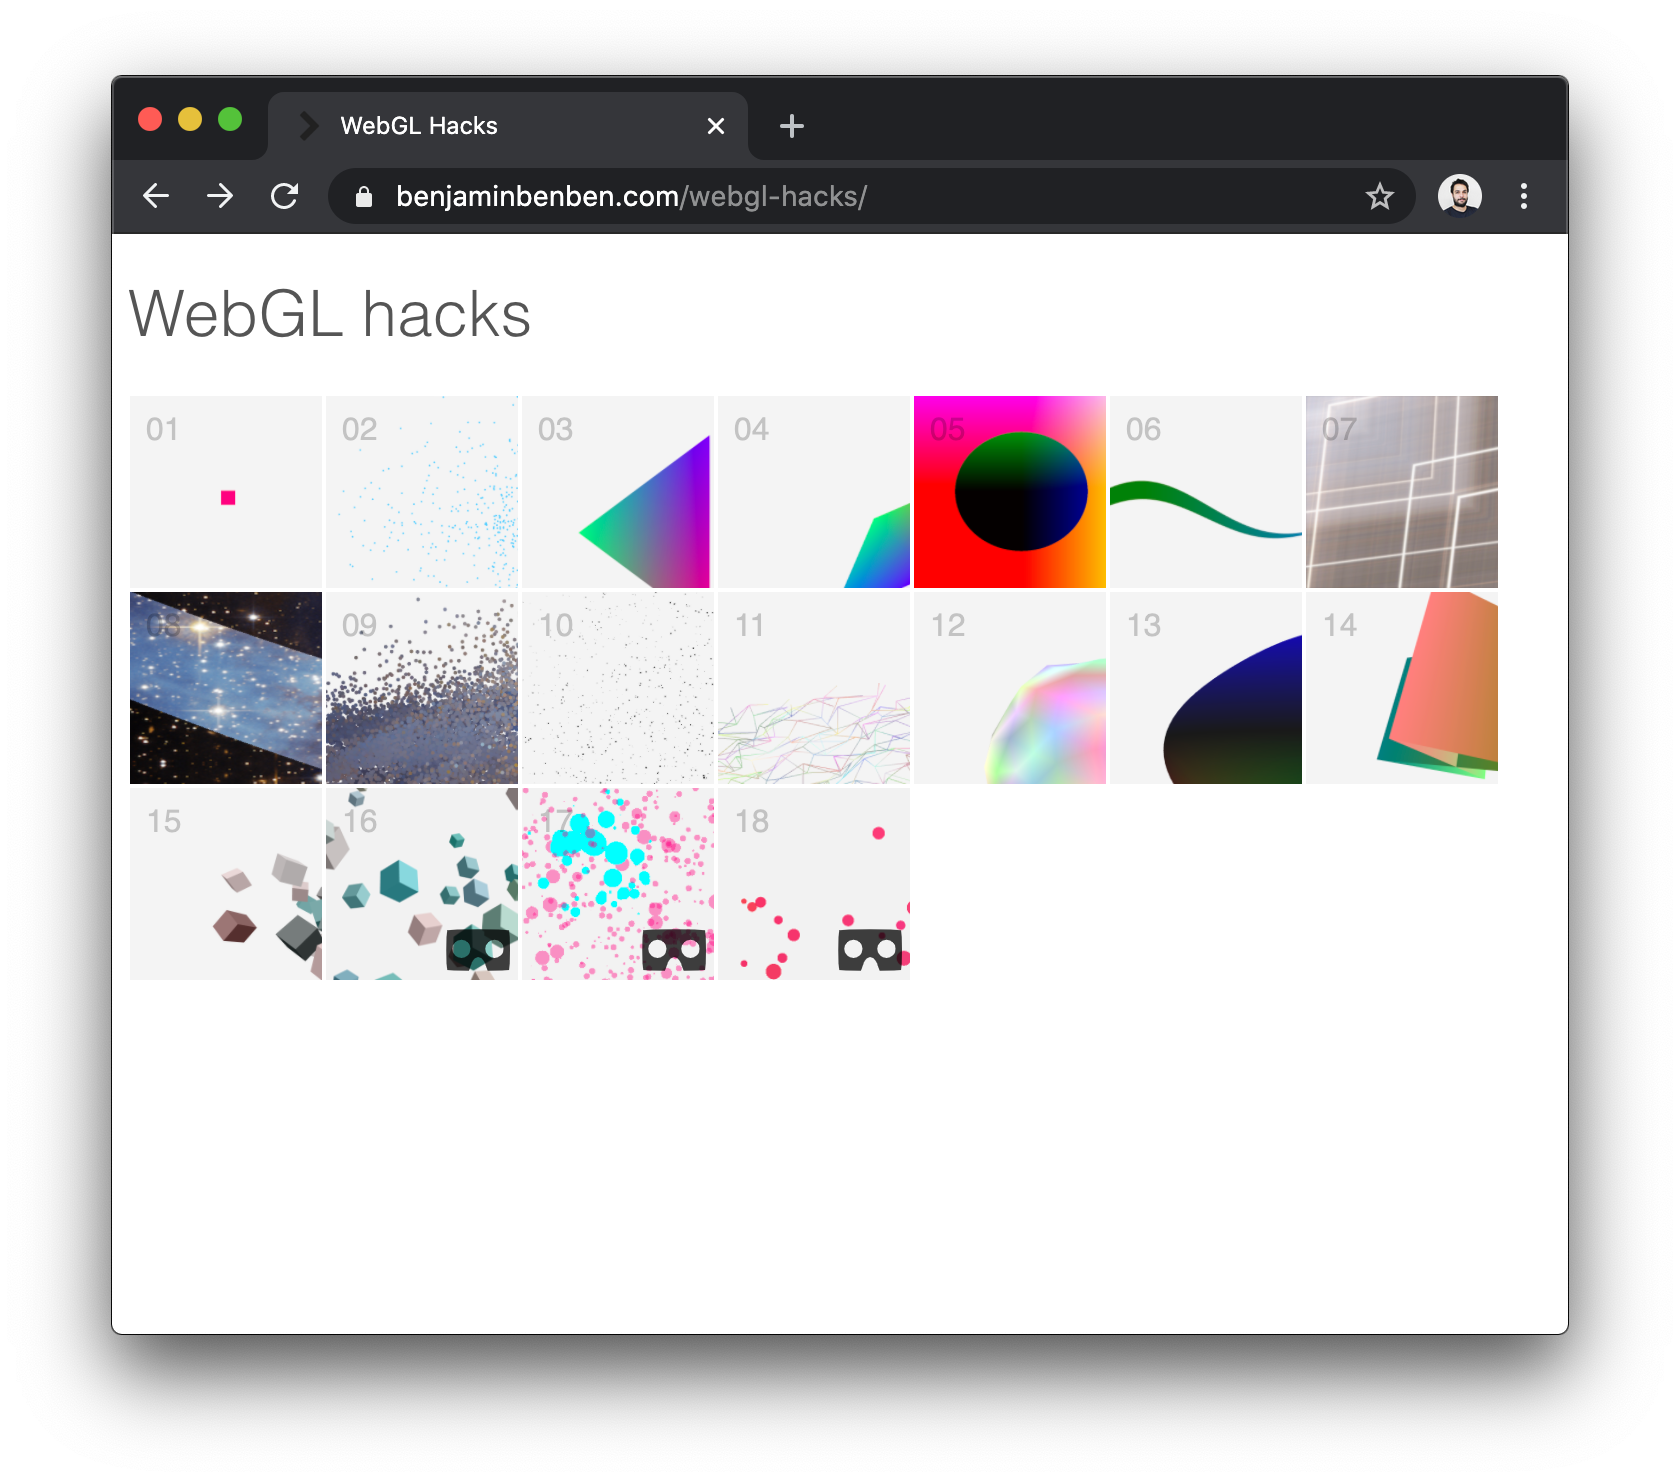 WebGL hacks